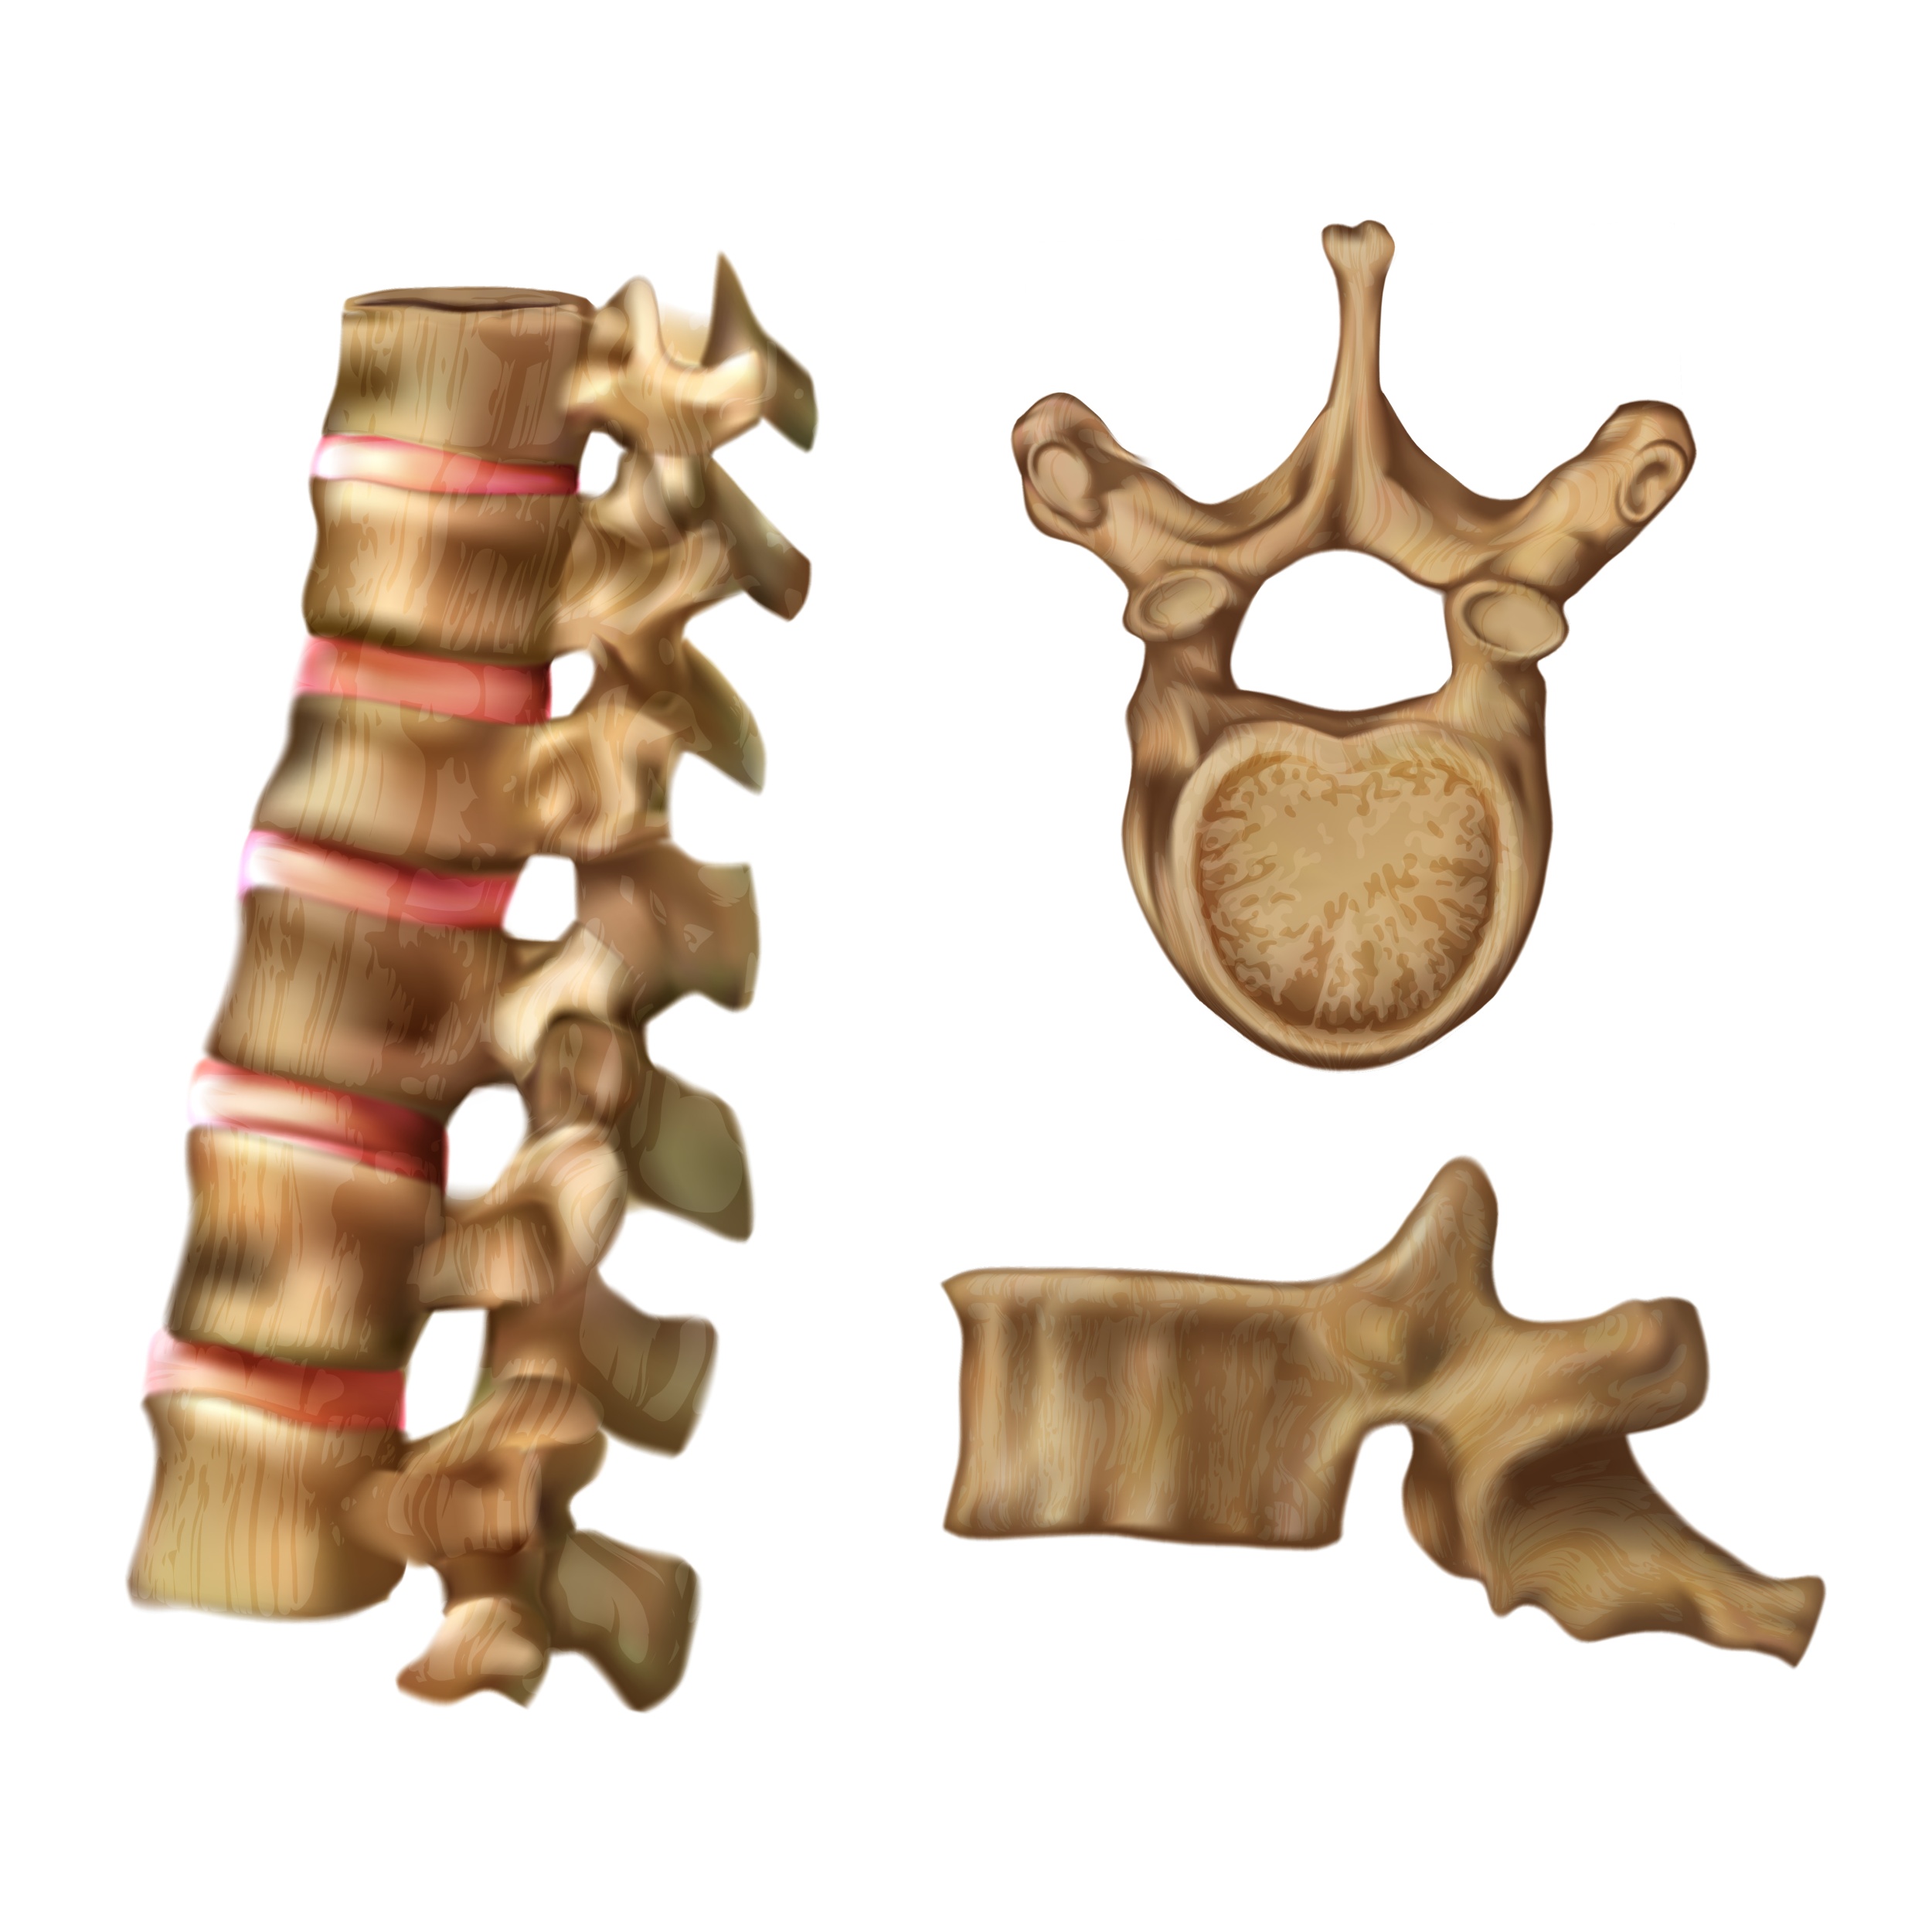 Vértebras - Ossos do esqueleto humano - InfoEscola